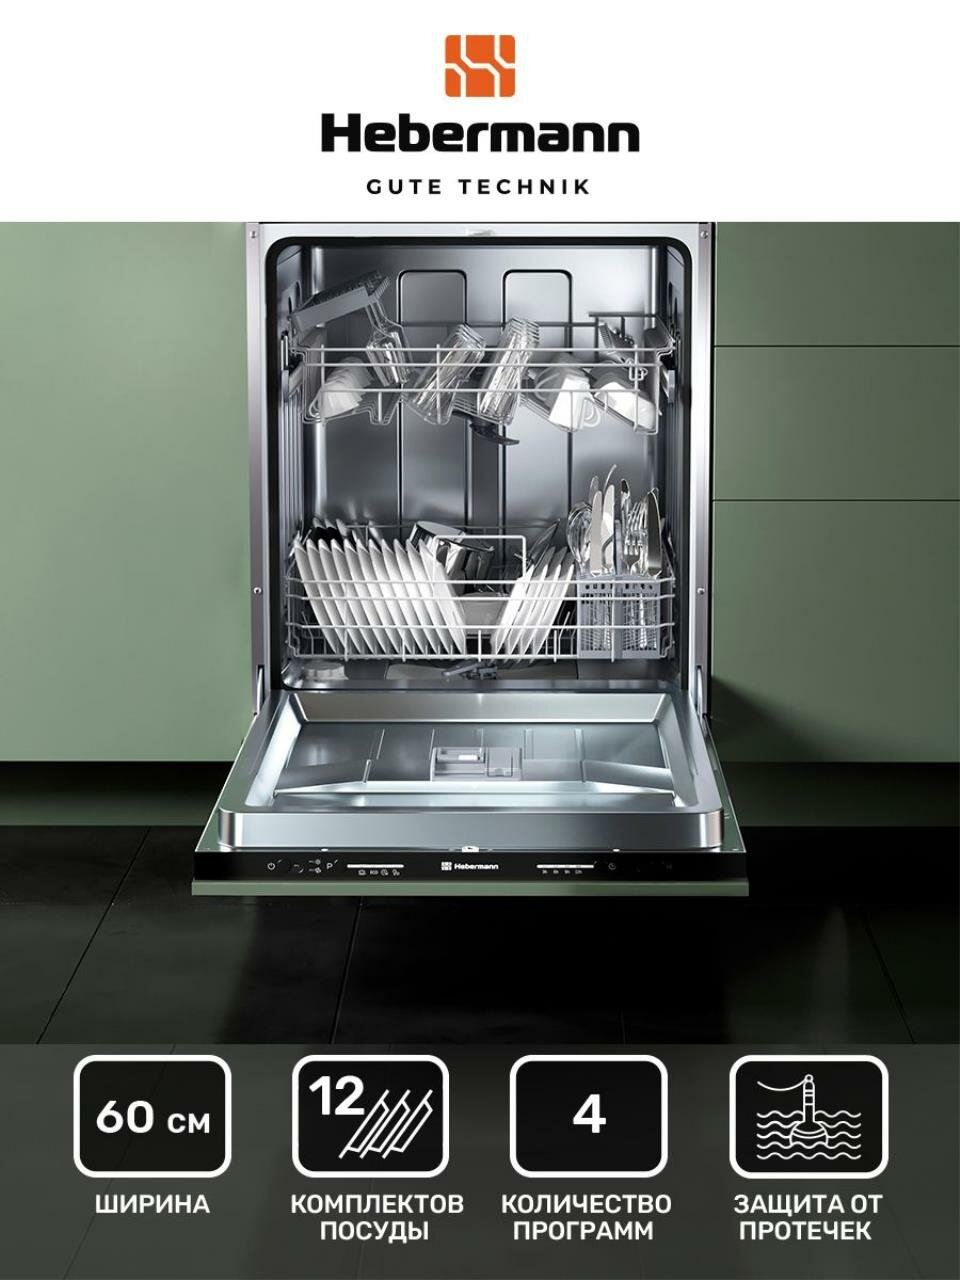 Посудомоечная машина встраиваемая HBSI 6024.1,60см, 4 программы (интенсивный, экономный, 90 минут, быстрый), Система защиты от протечек-AquaBlock, 3 корзины, отложенный старт.